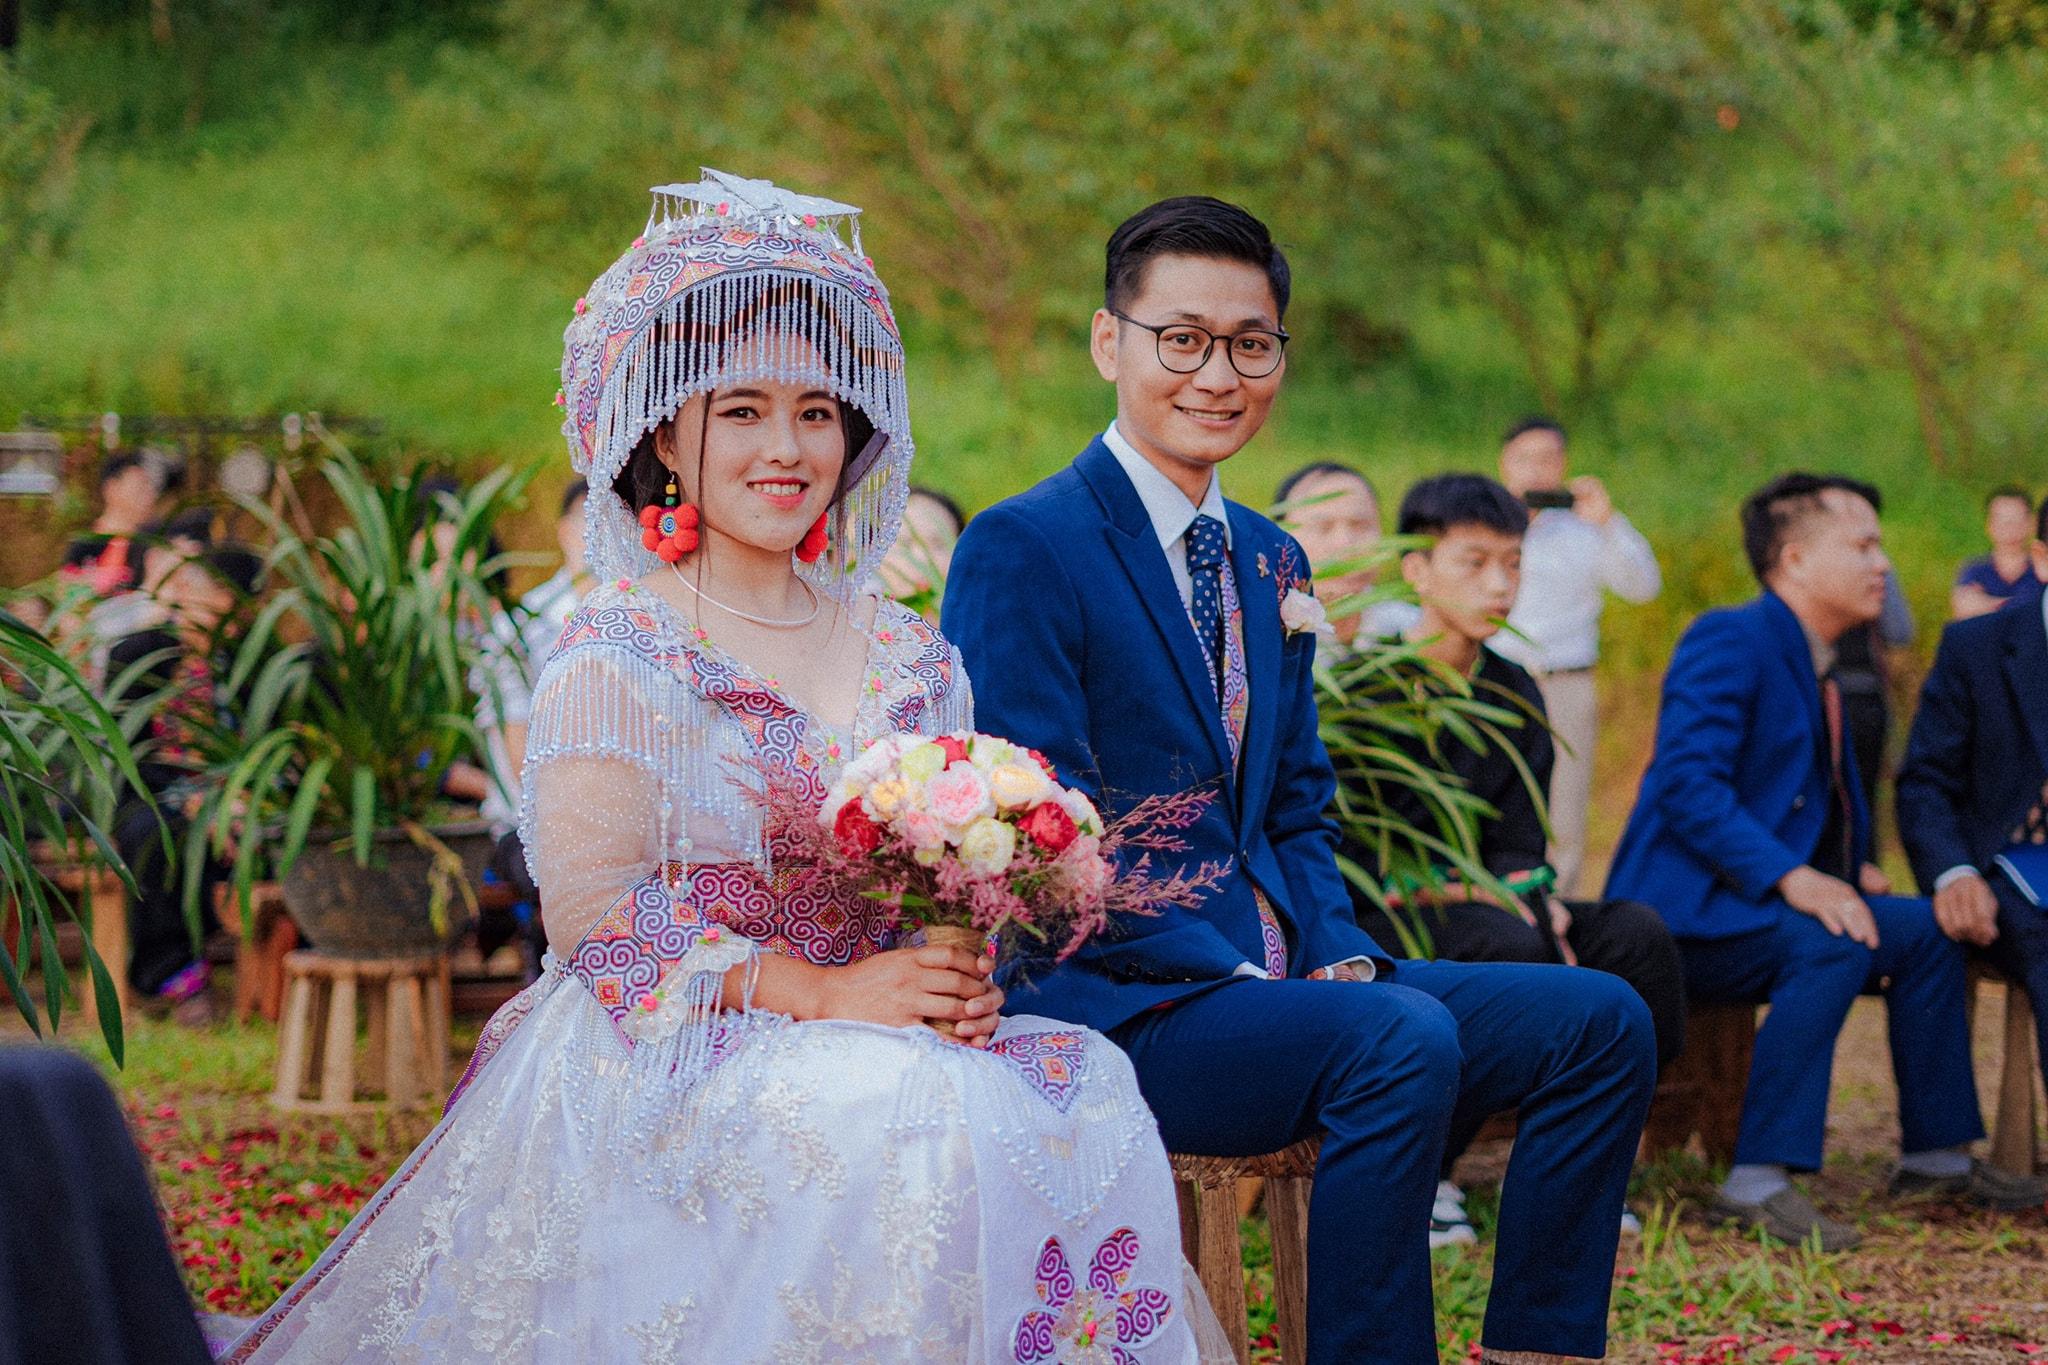 Đám cưới Sài Gòn H\'Mông Tây Bắc là sự kết hợp tuyệt vời giữa văn hóa miền Nam và miền Bắc, mang đến cho bạn những trải nghiệm đáng nhớ. Hãy xem qua hình ảnh để cảm nhận được sự độc đáo và đa dạng trong nghi thức cưới hỏi của người dân Việt Nam.